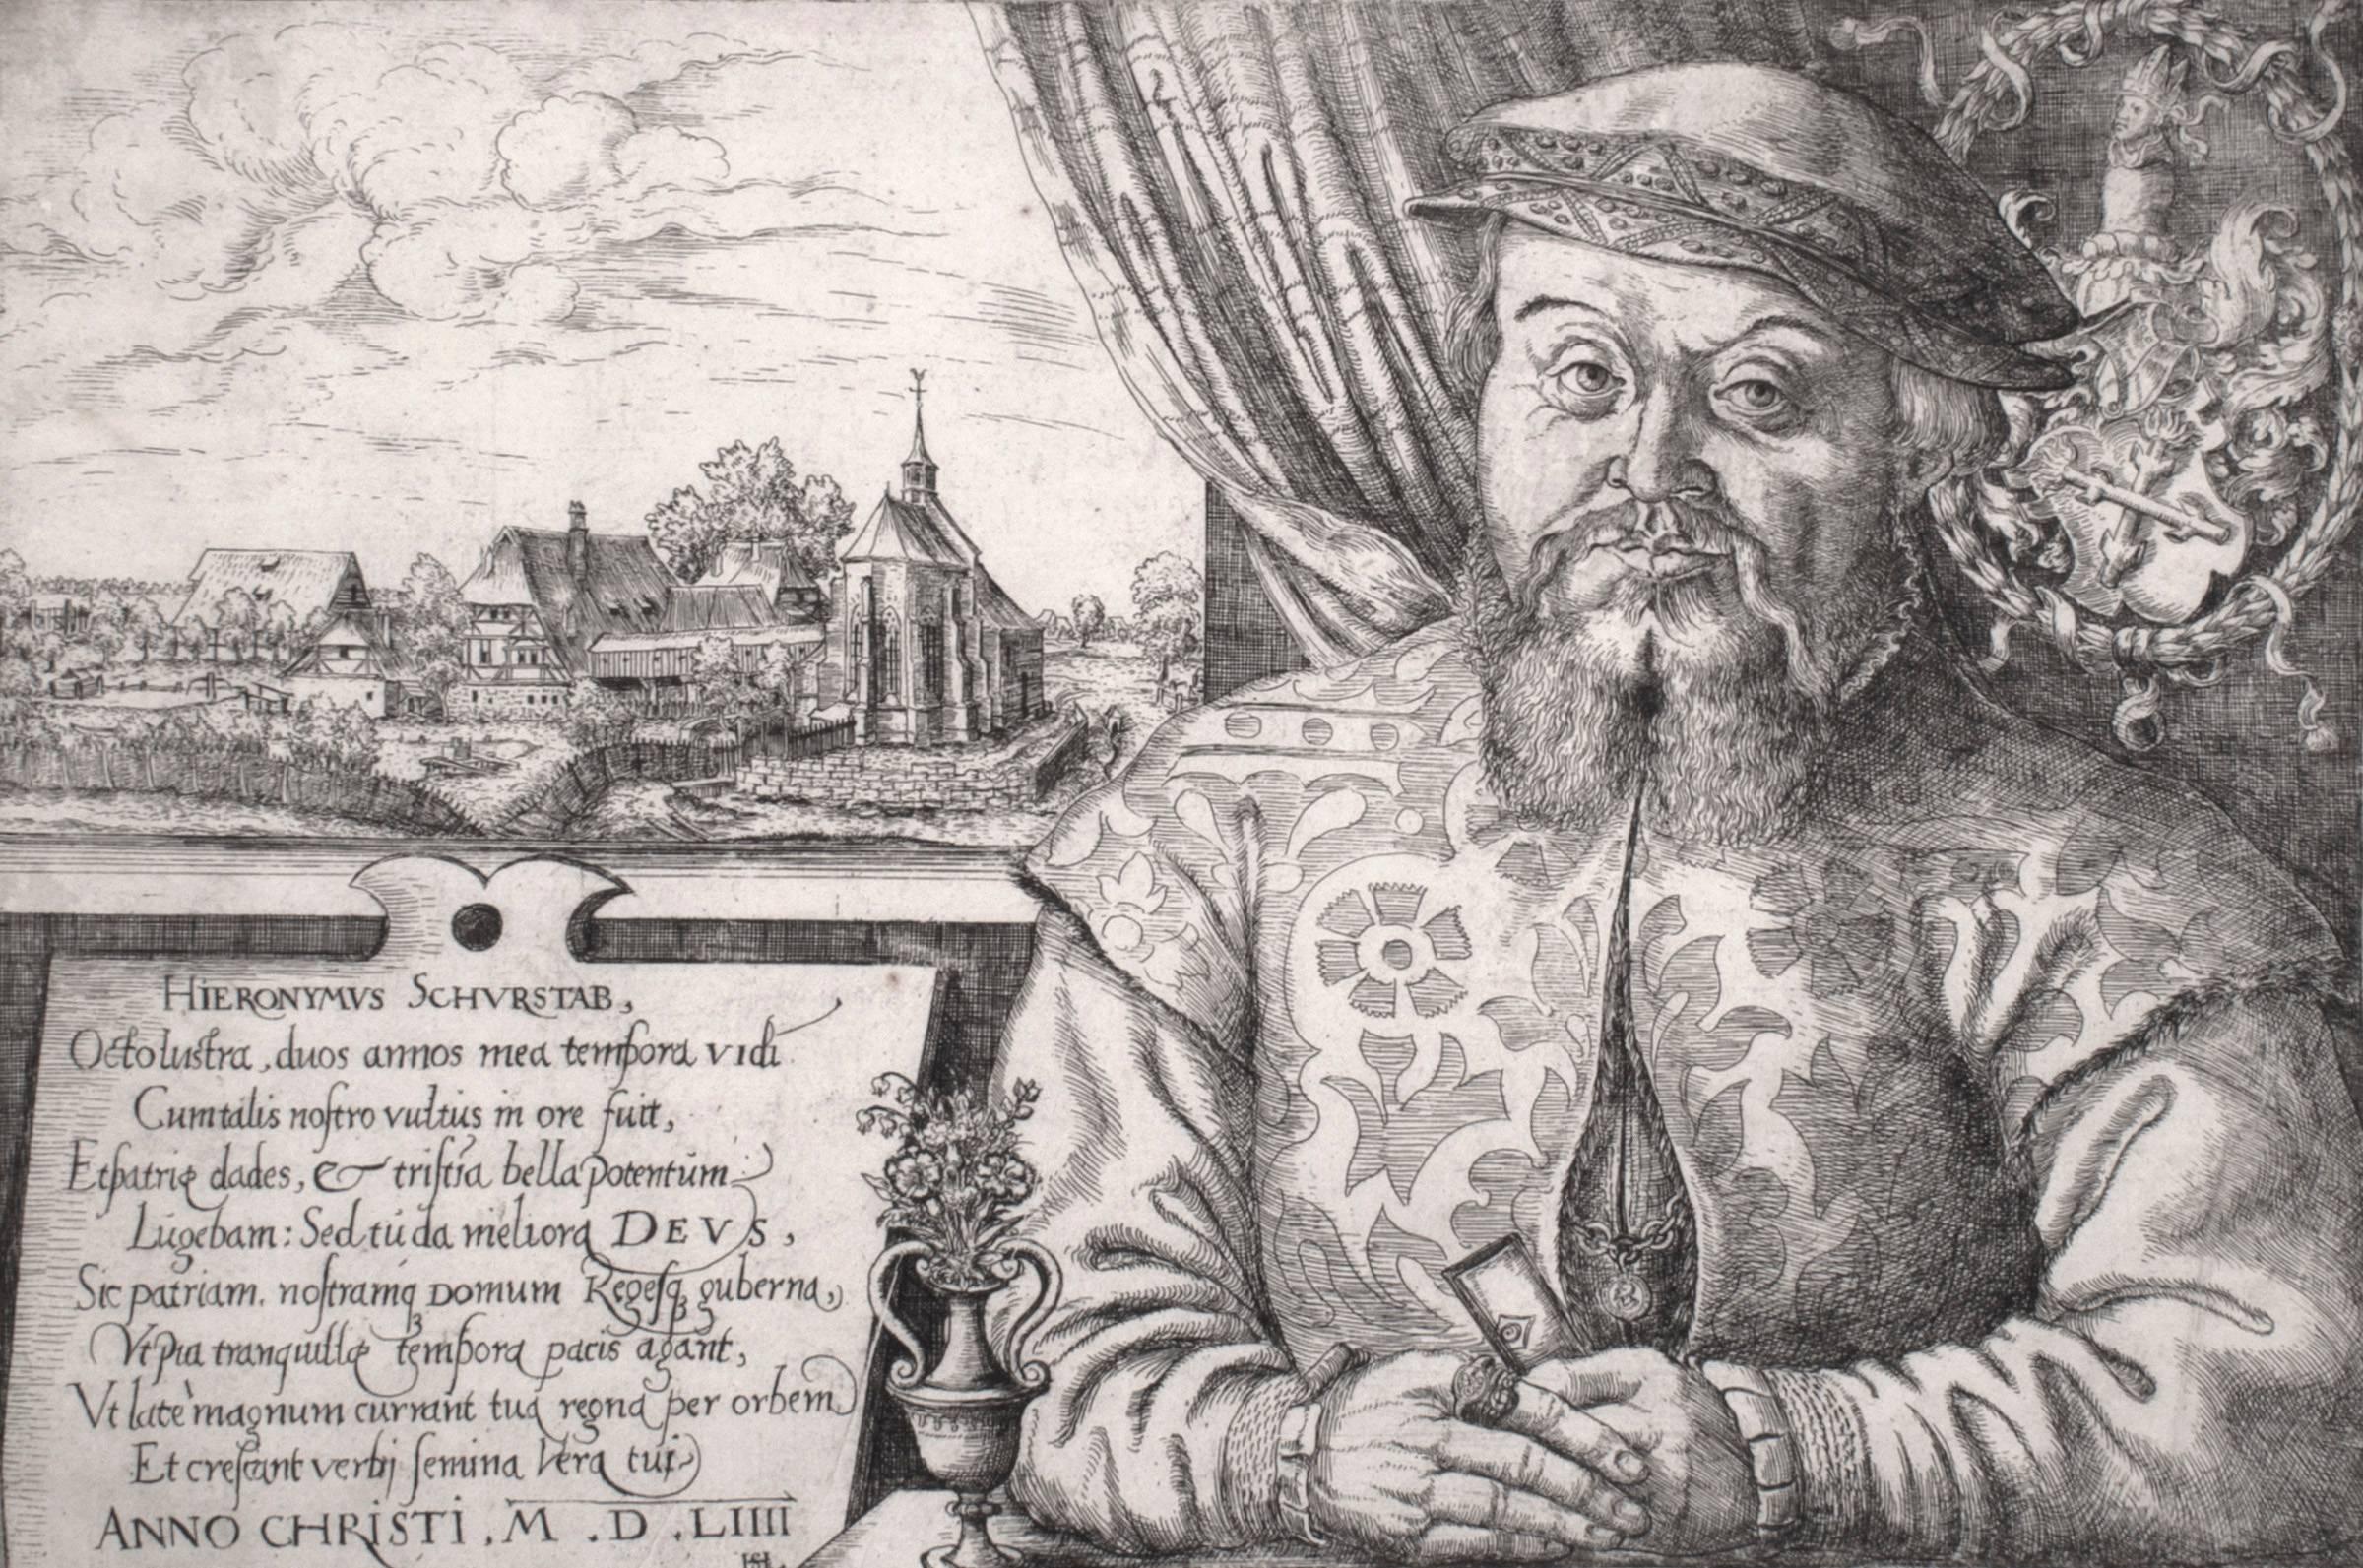 Hans Lautensack Portrait Print - Hieronymus Schurstab (1st state)